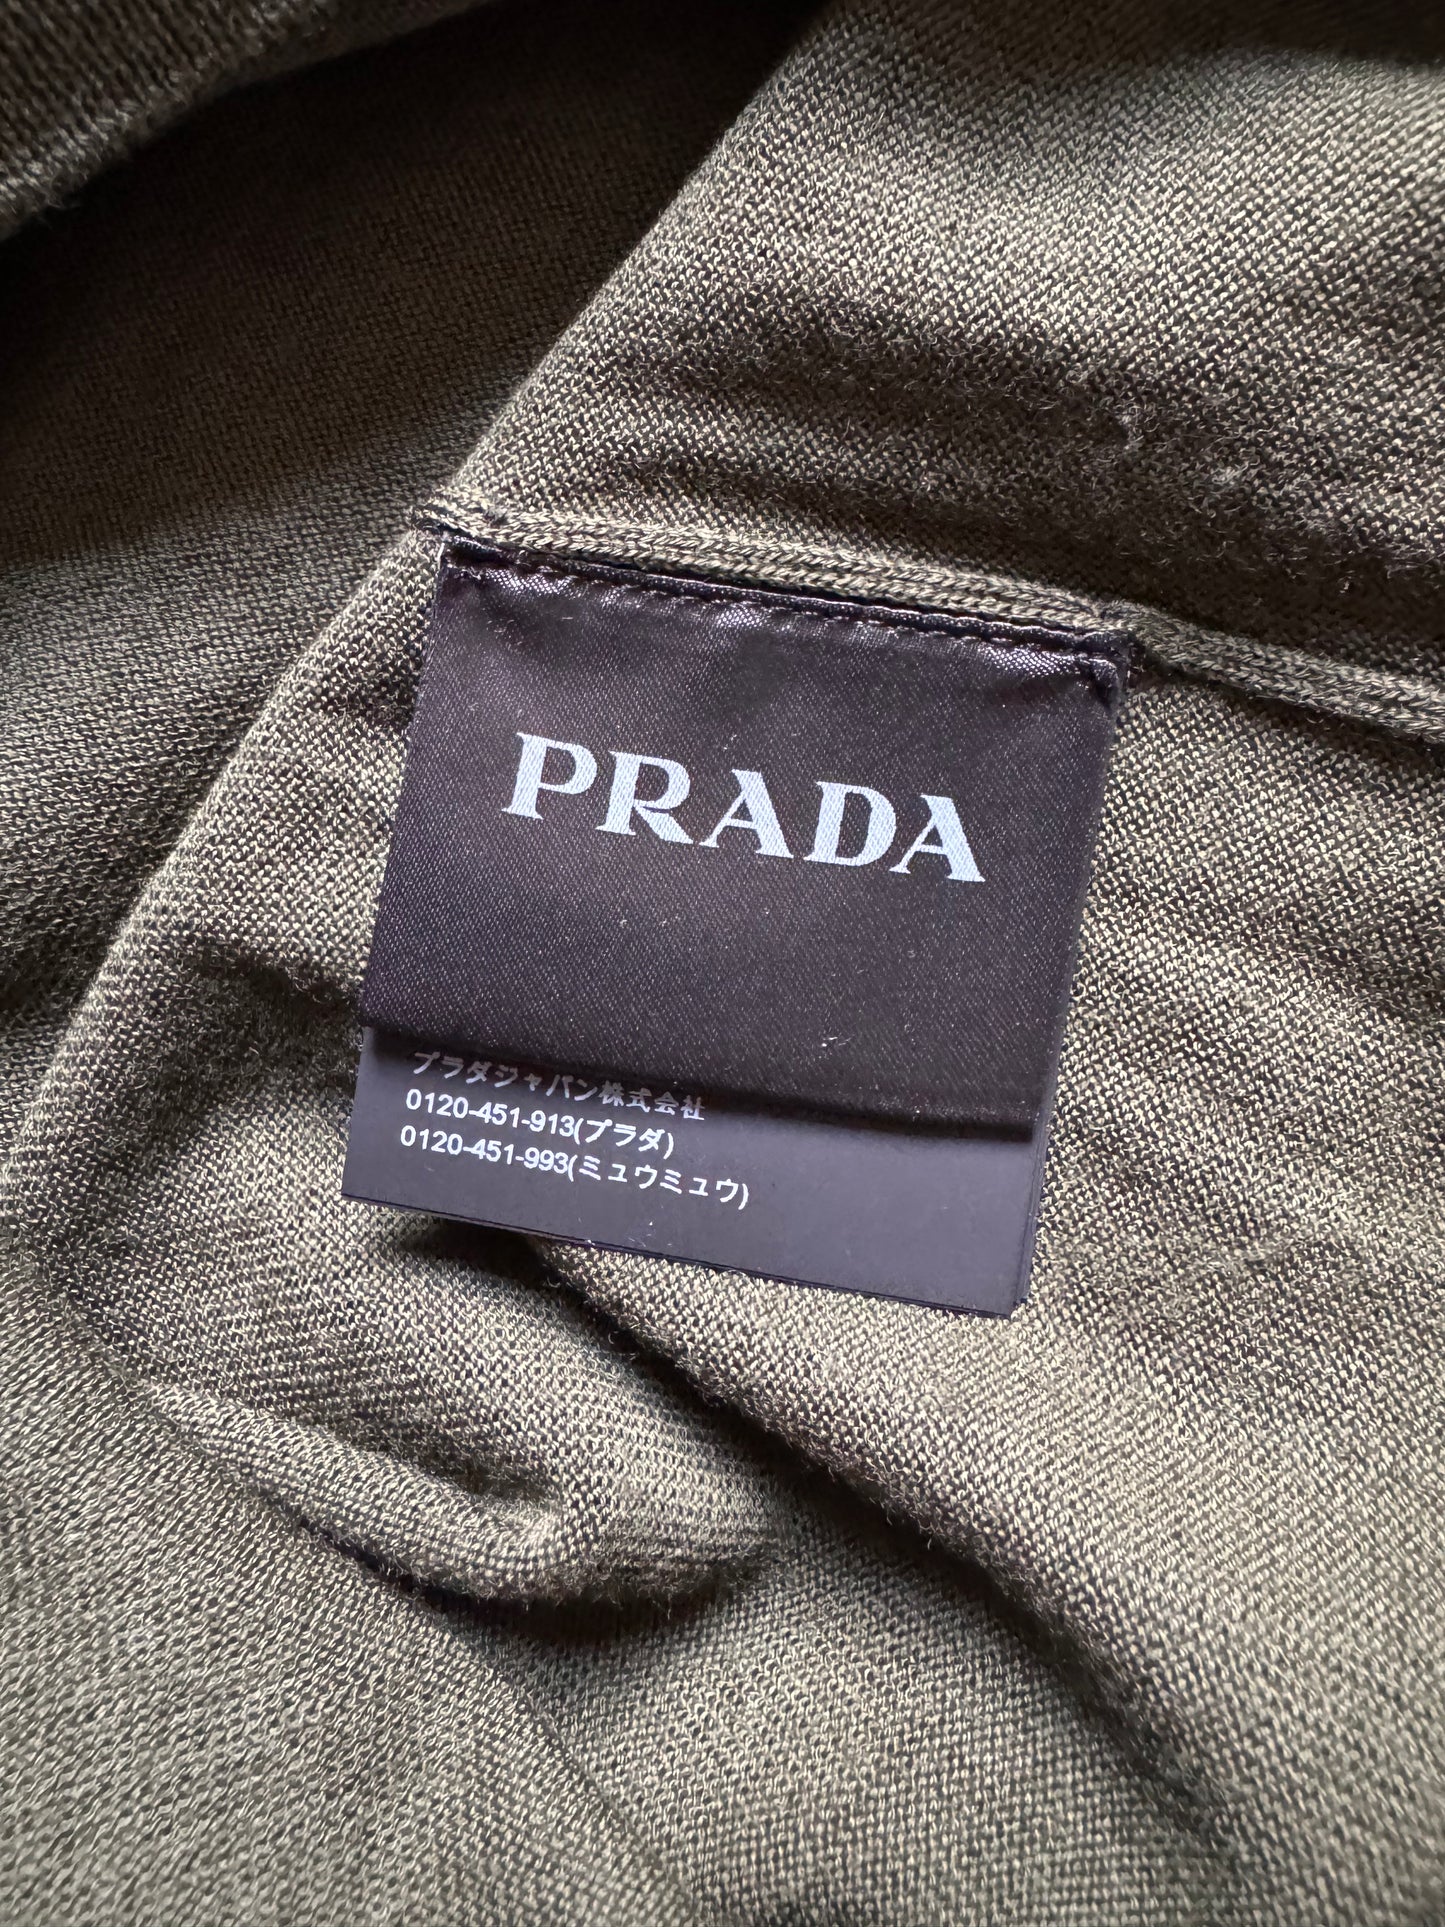 FW2019 Prada Wool Olive Sweater  (L) - 6